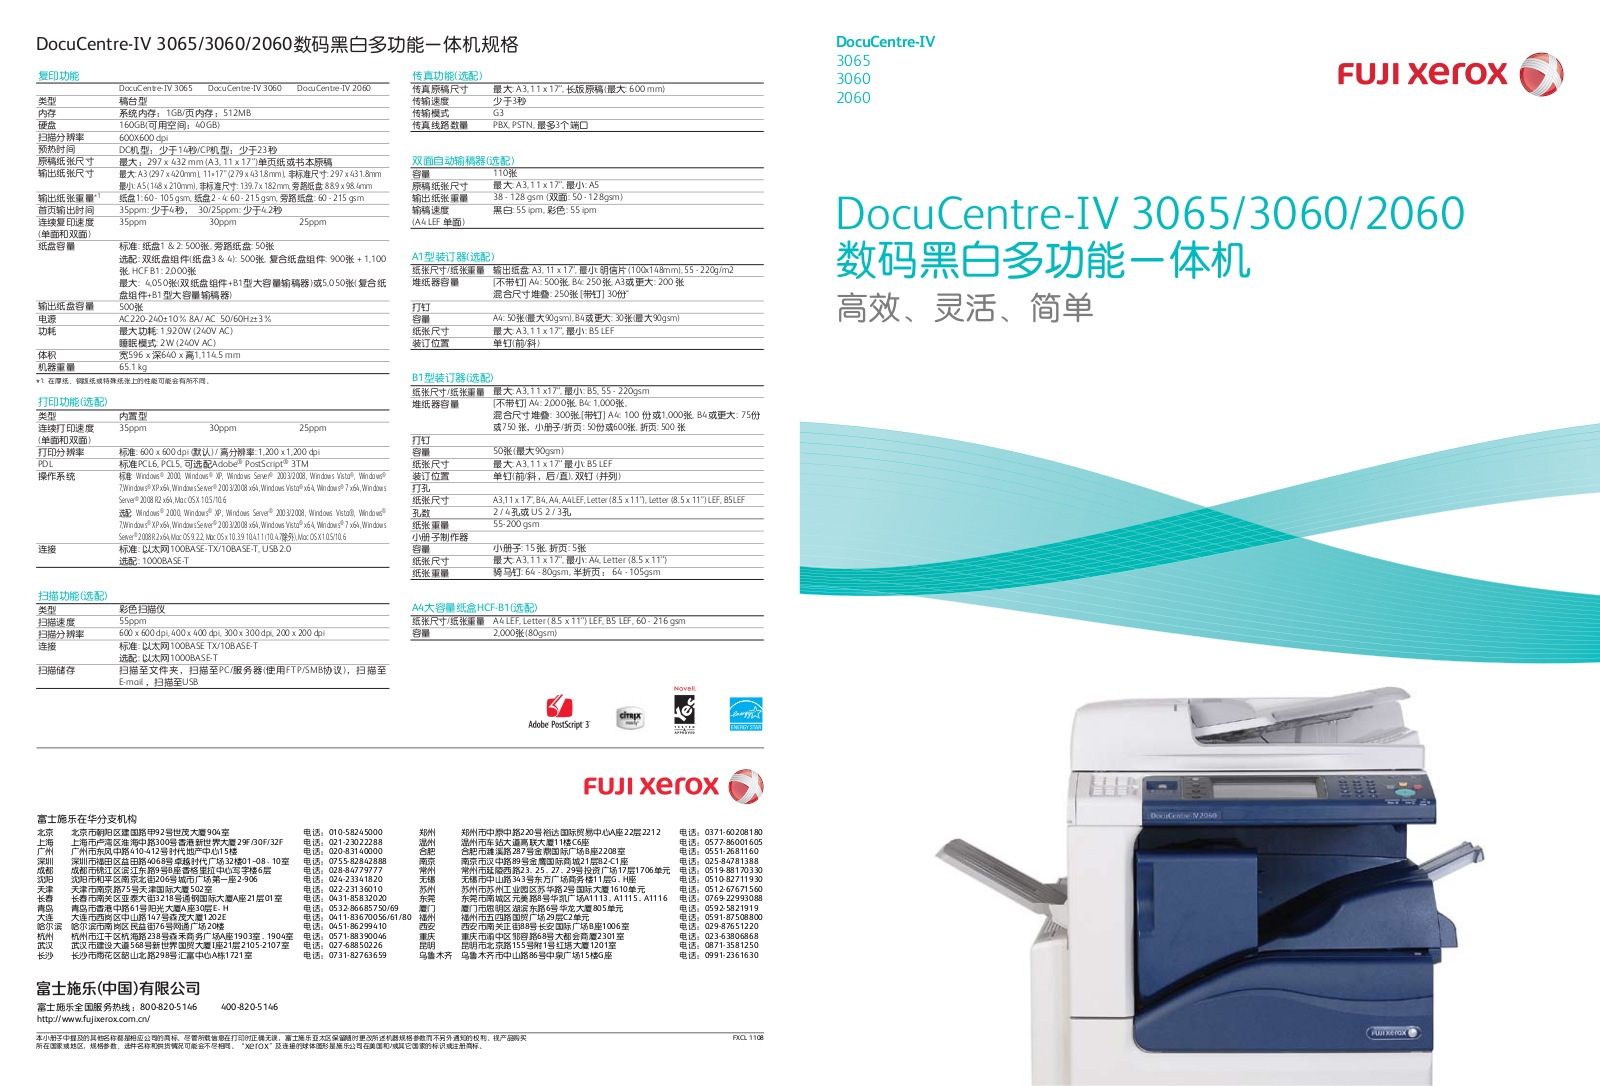 Fuji Xerox 3065, 3060, 2060 Service Manual